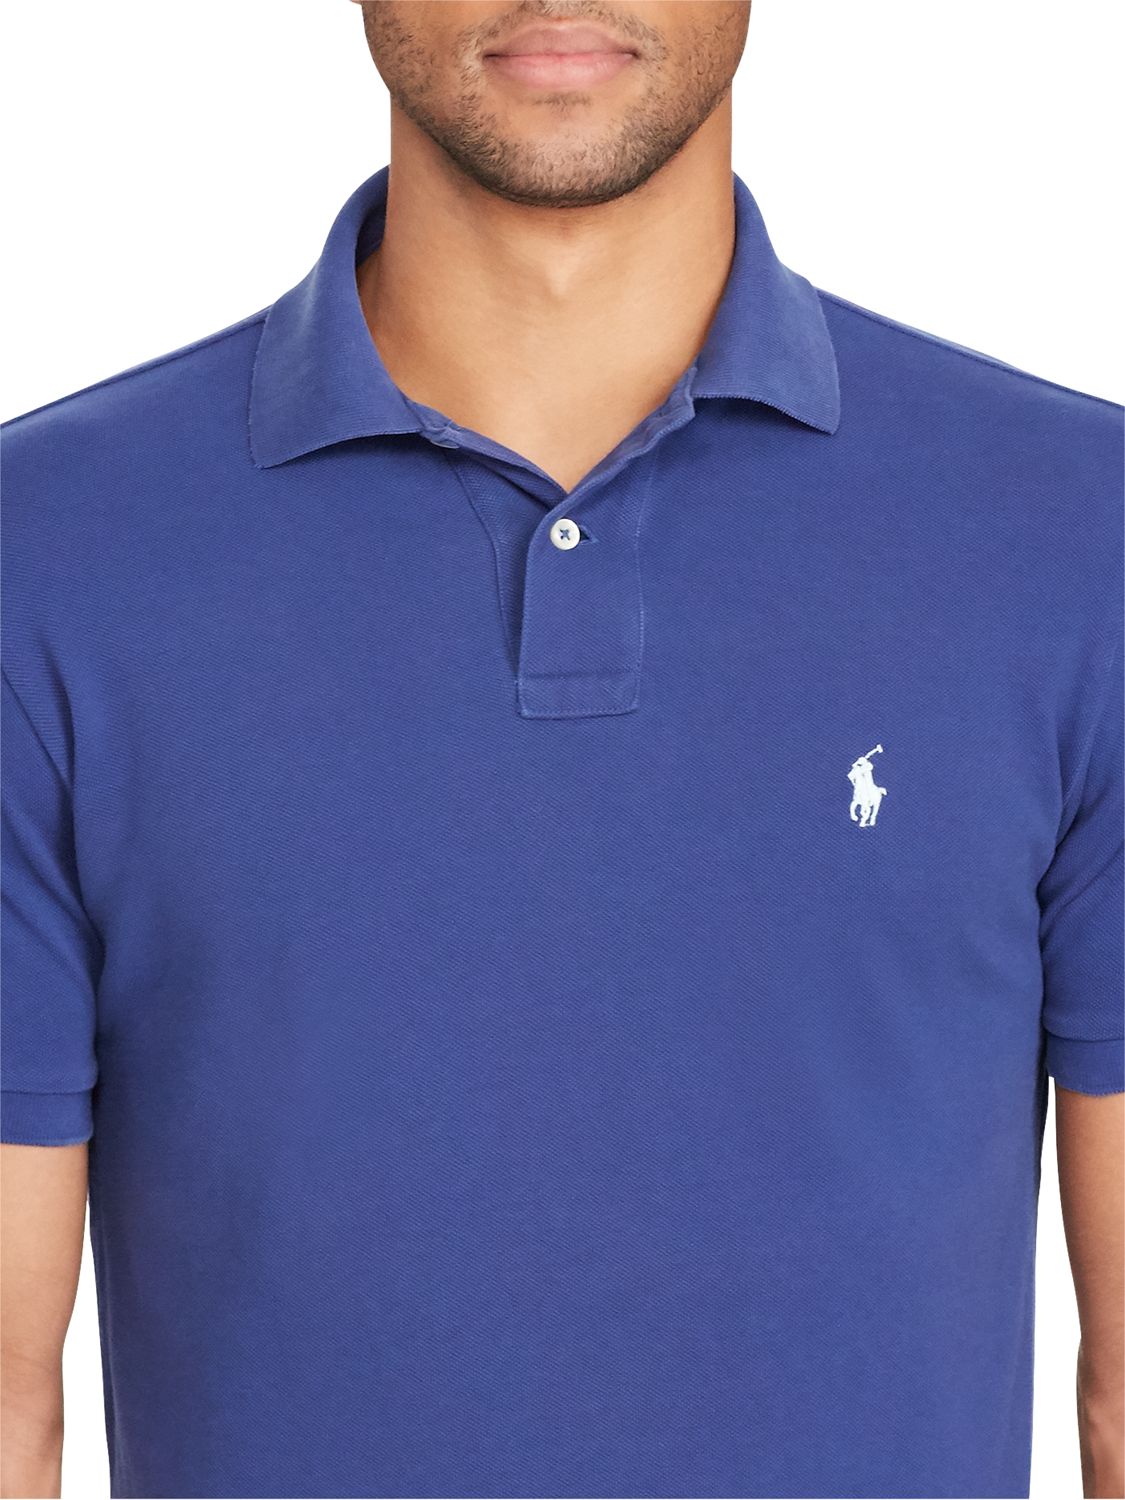 blue ralph lauren polo shirts